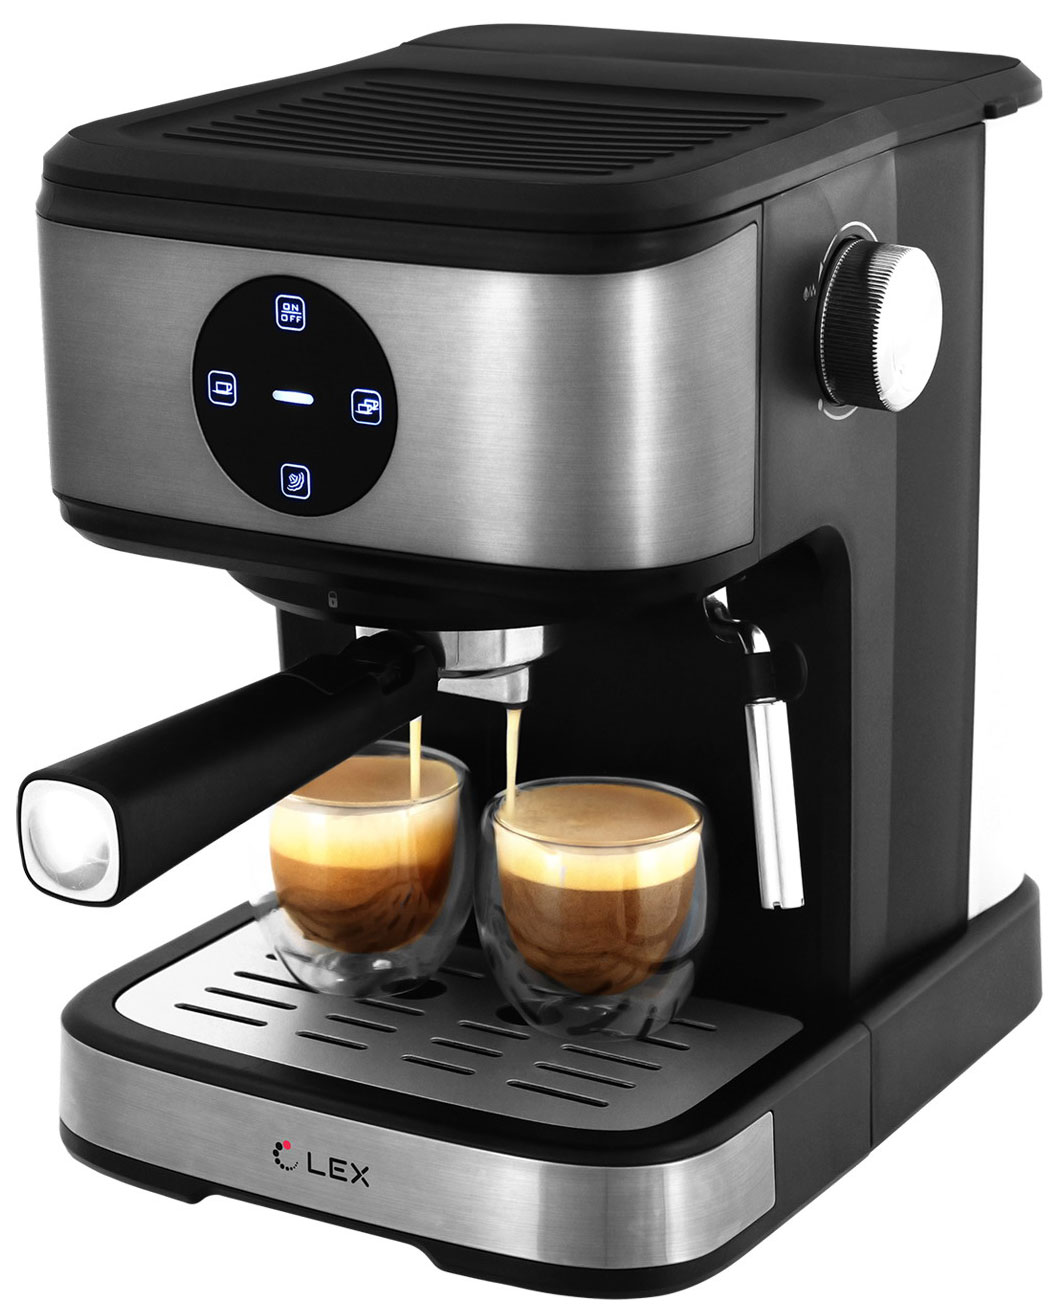 Кофеварка LEX LXCM 3502-1 с капучинатором (черная) ложка мерная пресс для кофе cilio